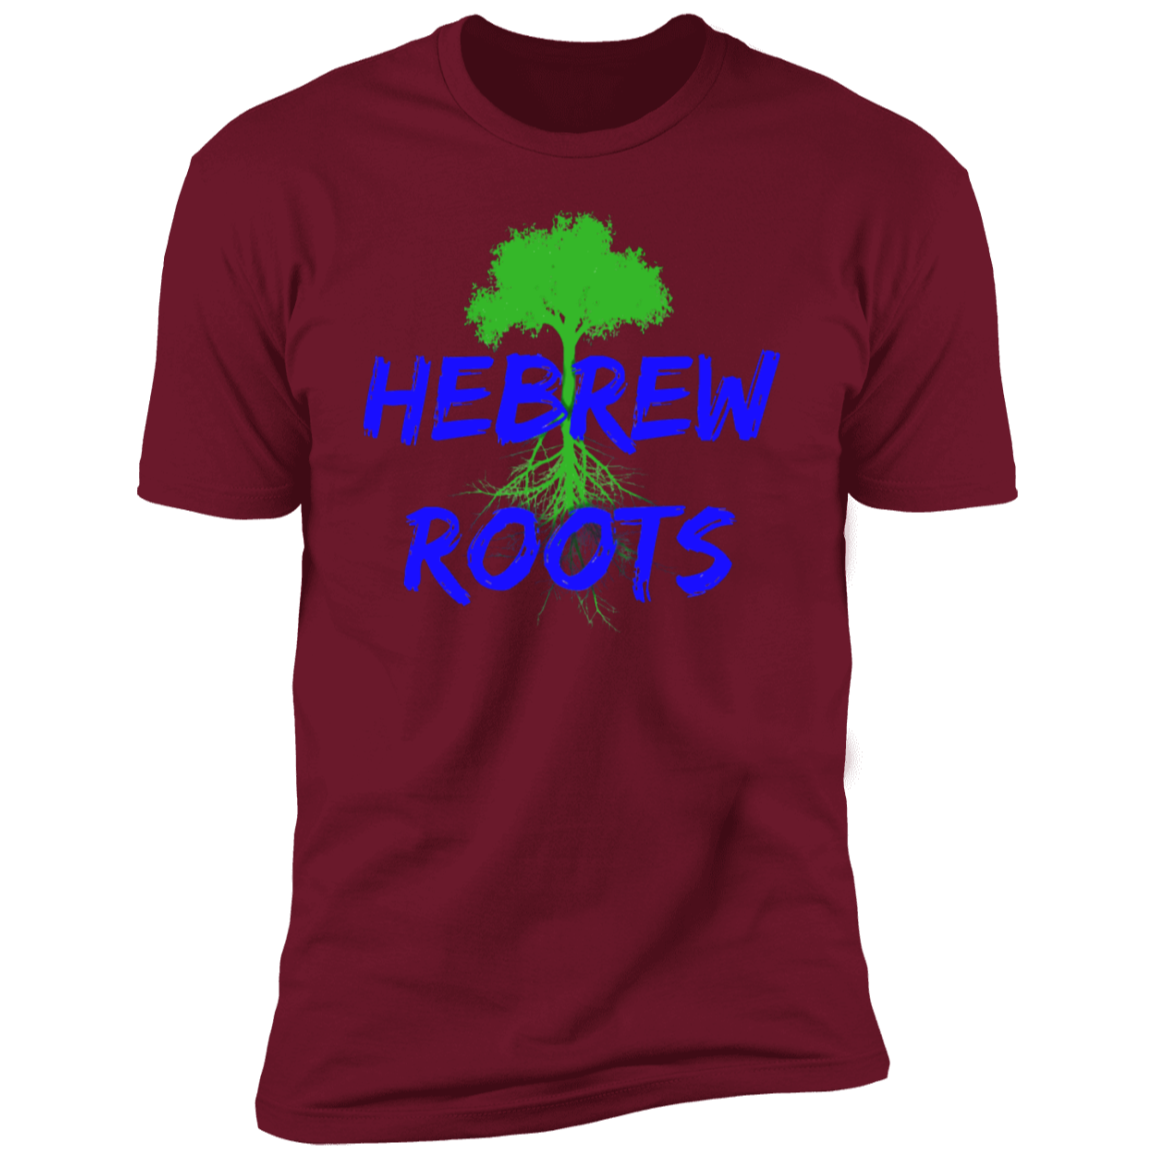 Hebrew Roots Men's T-Shirt